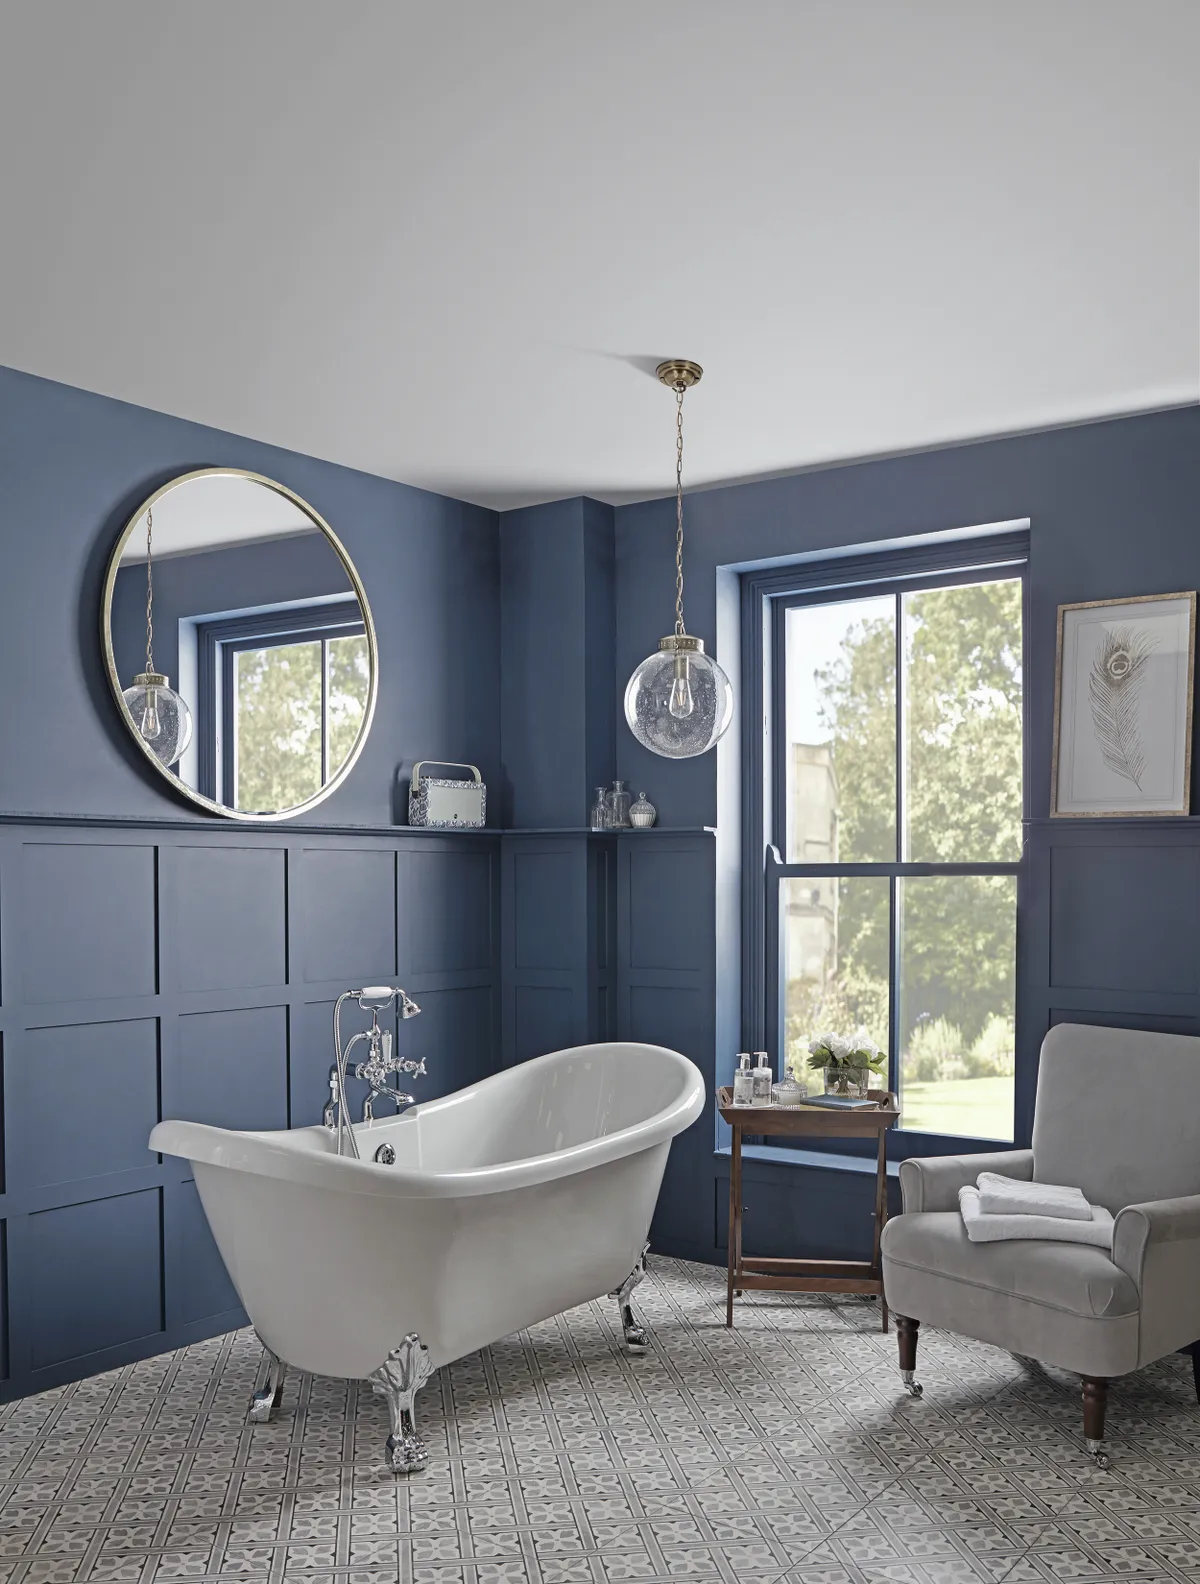 A traditional bathroom with dark blue walls